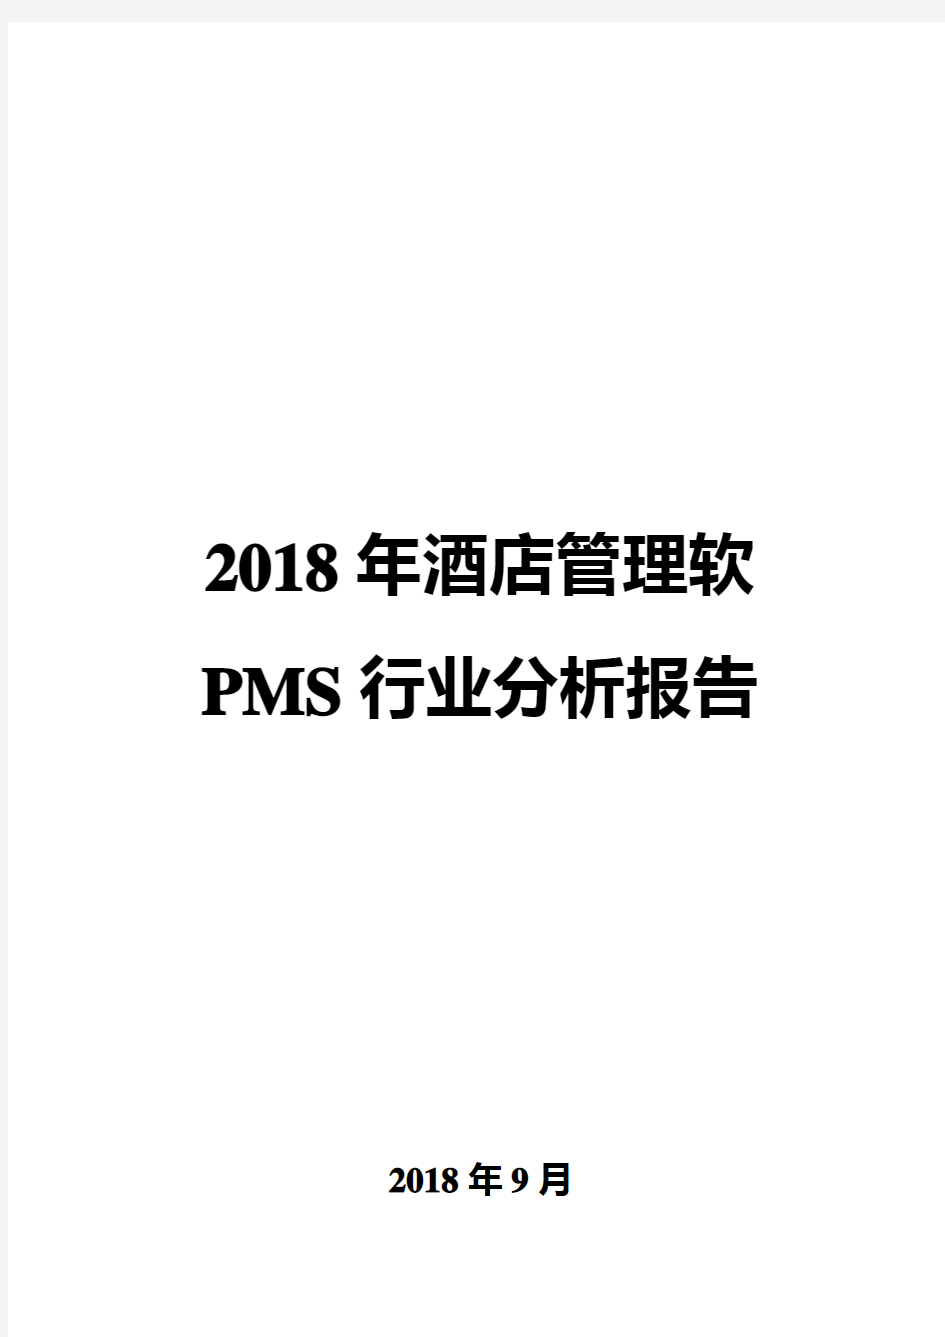 2018年酒店管理软PMS行业分析报告